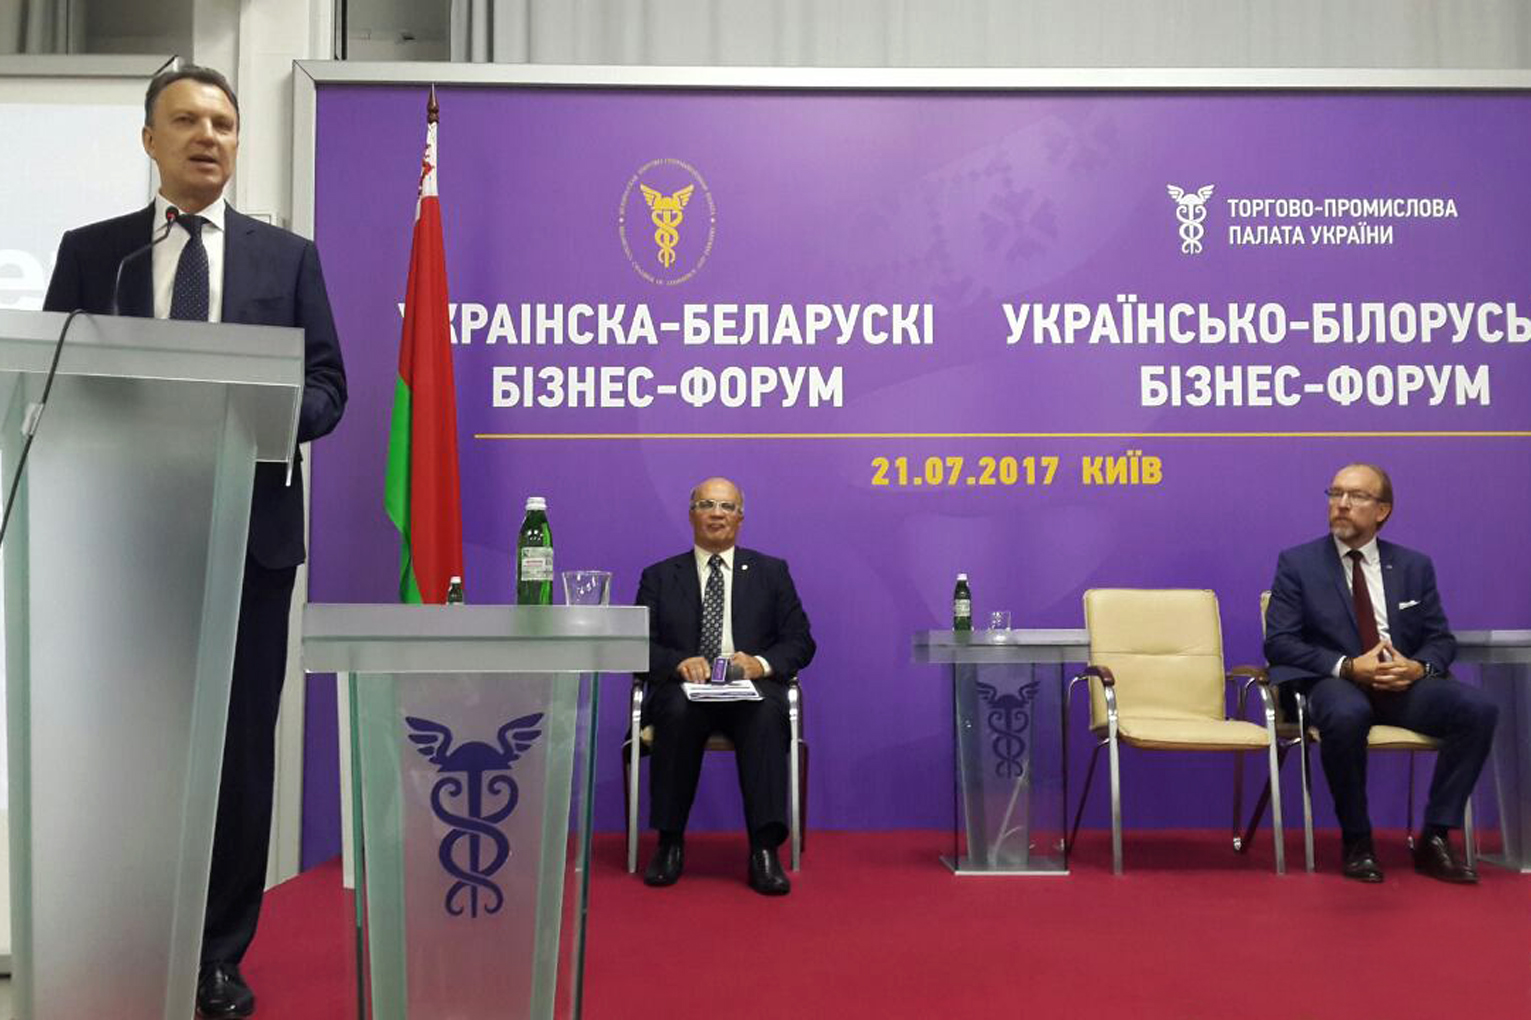 Belarus-Ukraine business forum